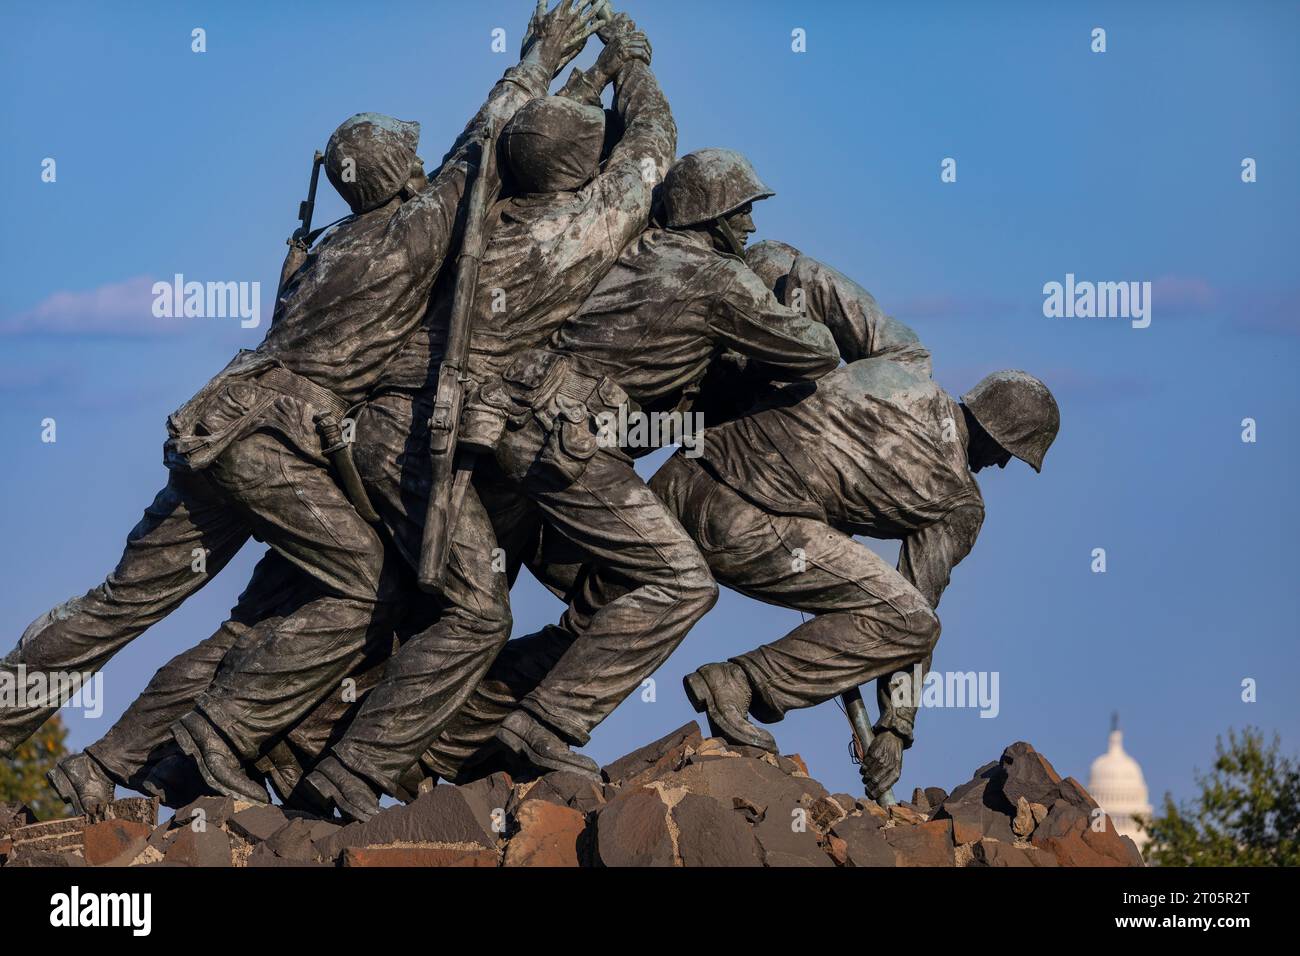 ROSSLYN, ARLINGTON, VIRGINIA, USA - détail du mémorial de guerre du corps des Marines des États-Unis Iwo Jima. Banque D'Images